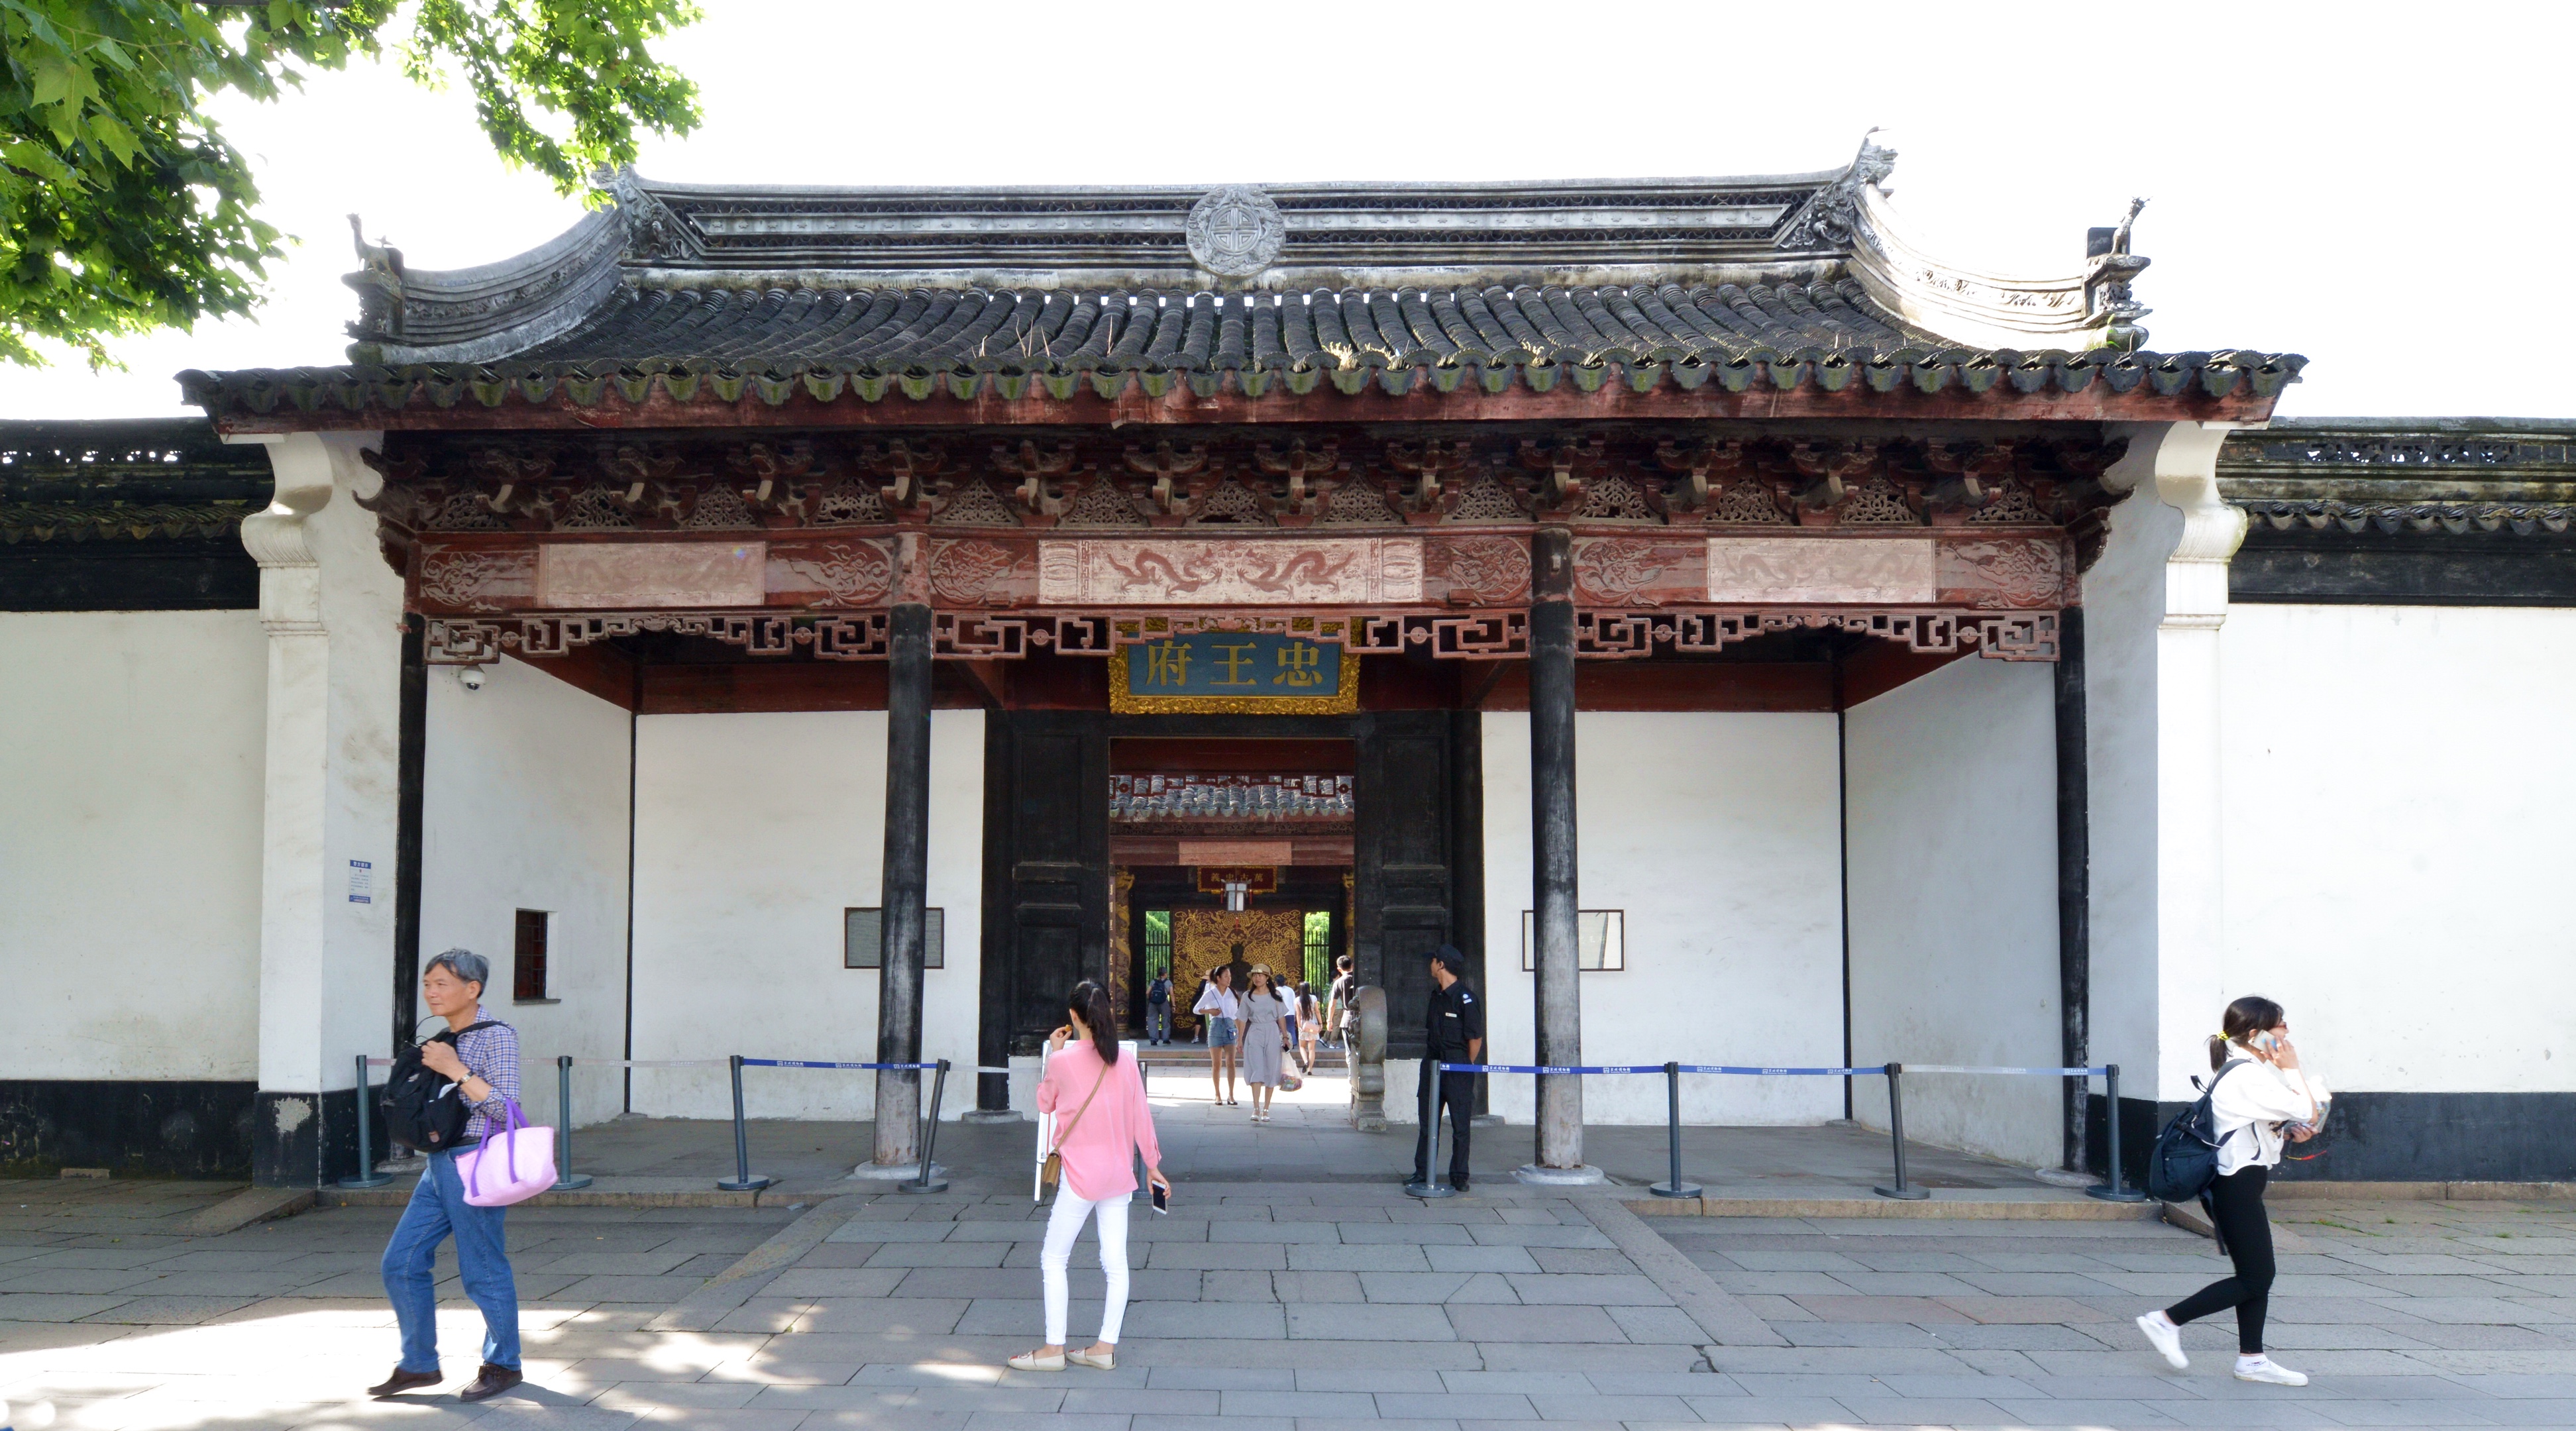 忠王府是原来苏州博物馆的正门,现在是苏州博物馆的出口处.